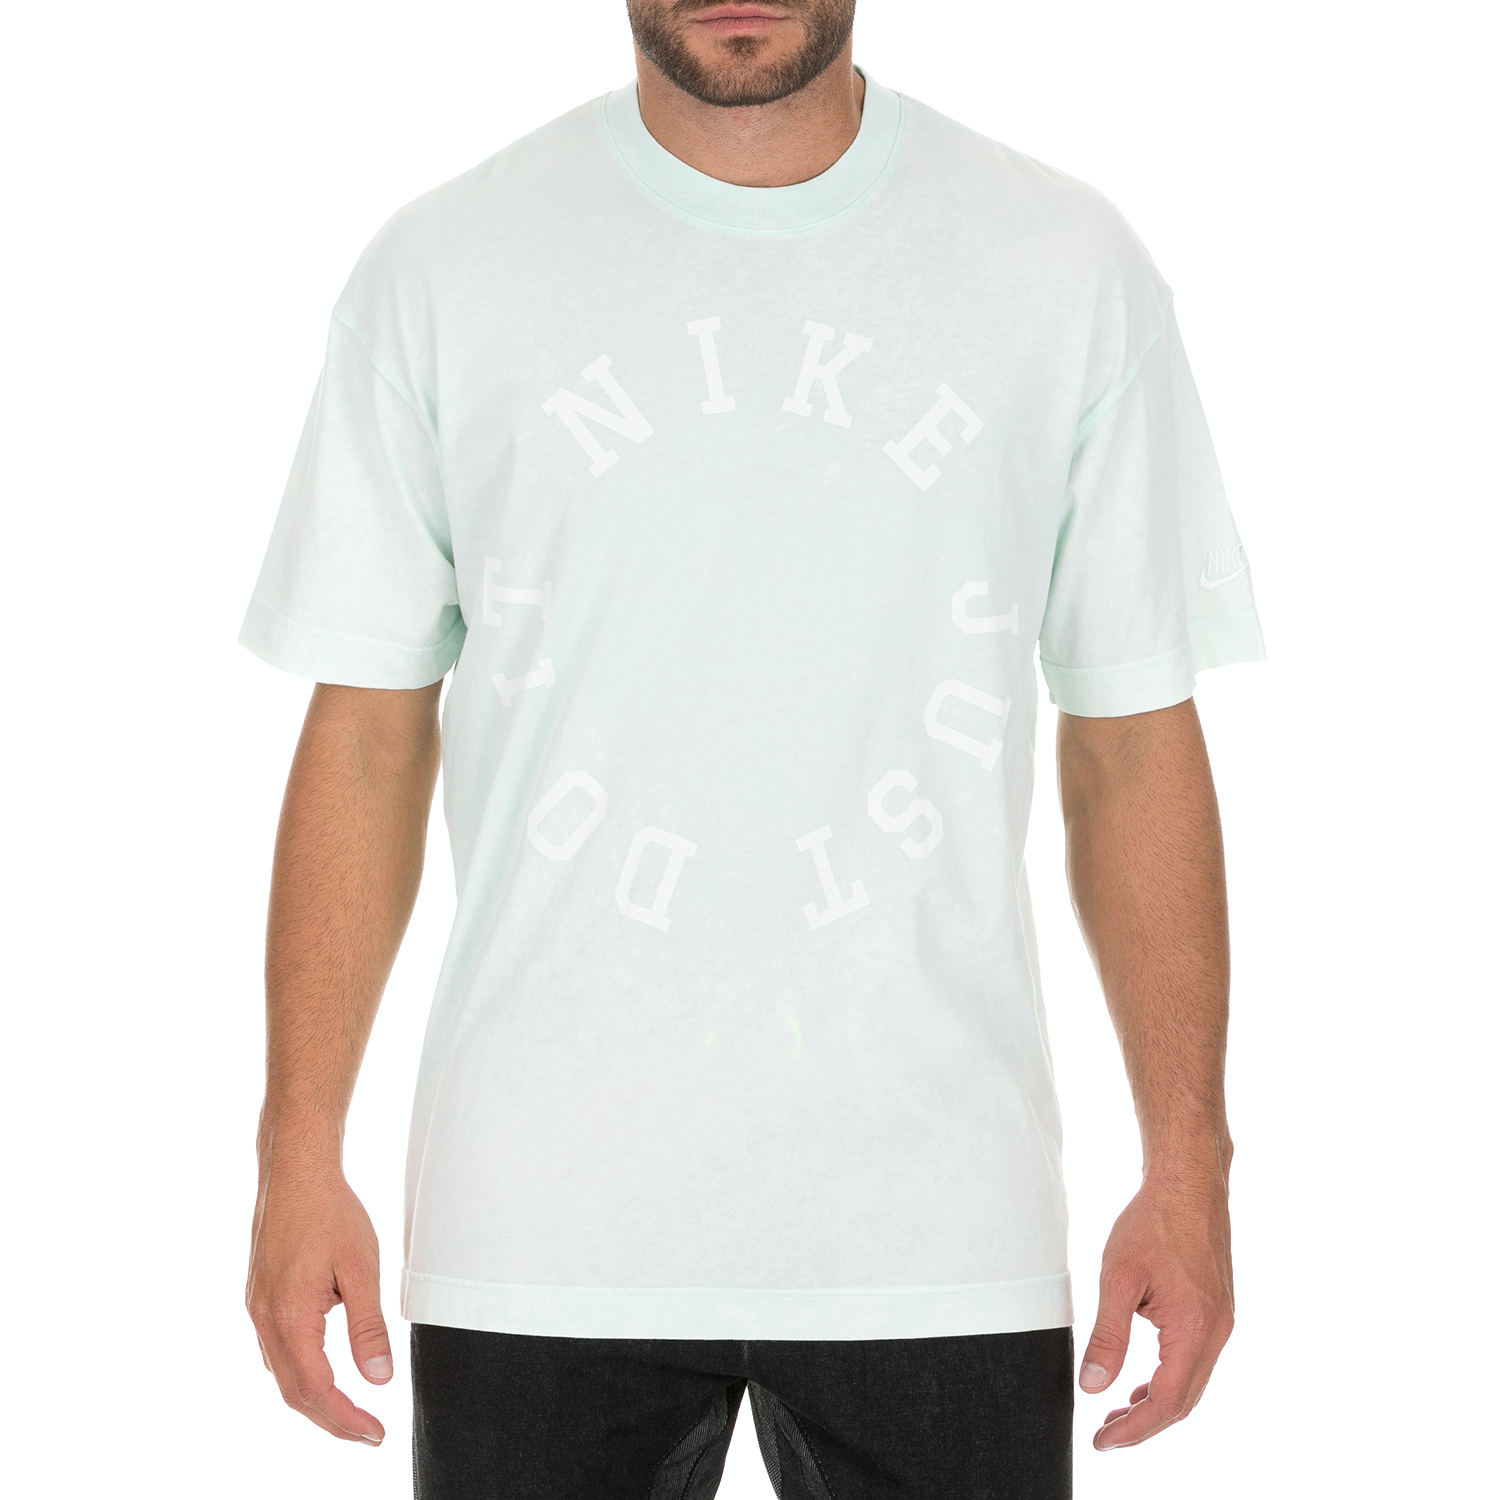 Ανδρικά/Ρούχα/Αθλητικά/T-shirt NIKE - Ανδρικό t-shirt NΙKΕ SPORTSWEAR Short-Sl πράσινο λευκό